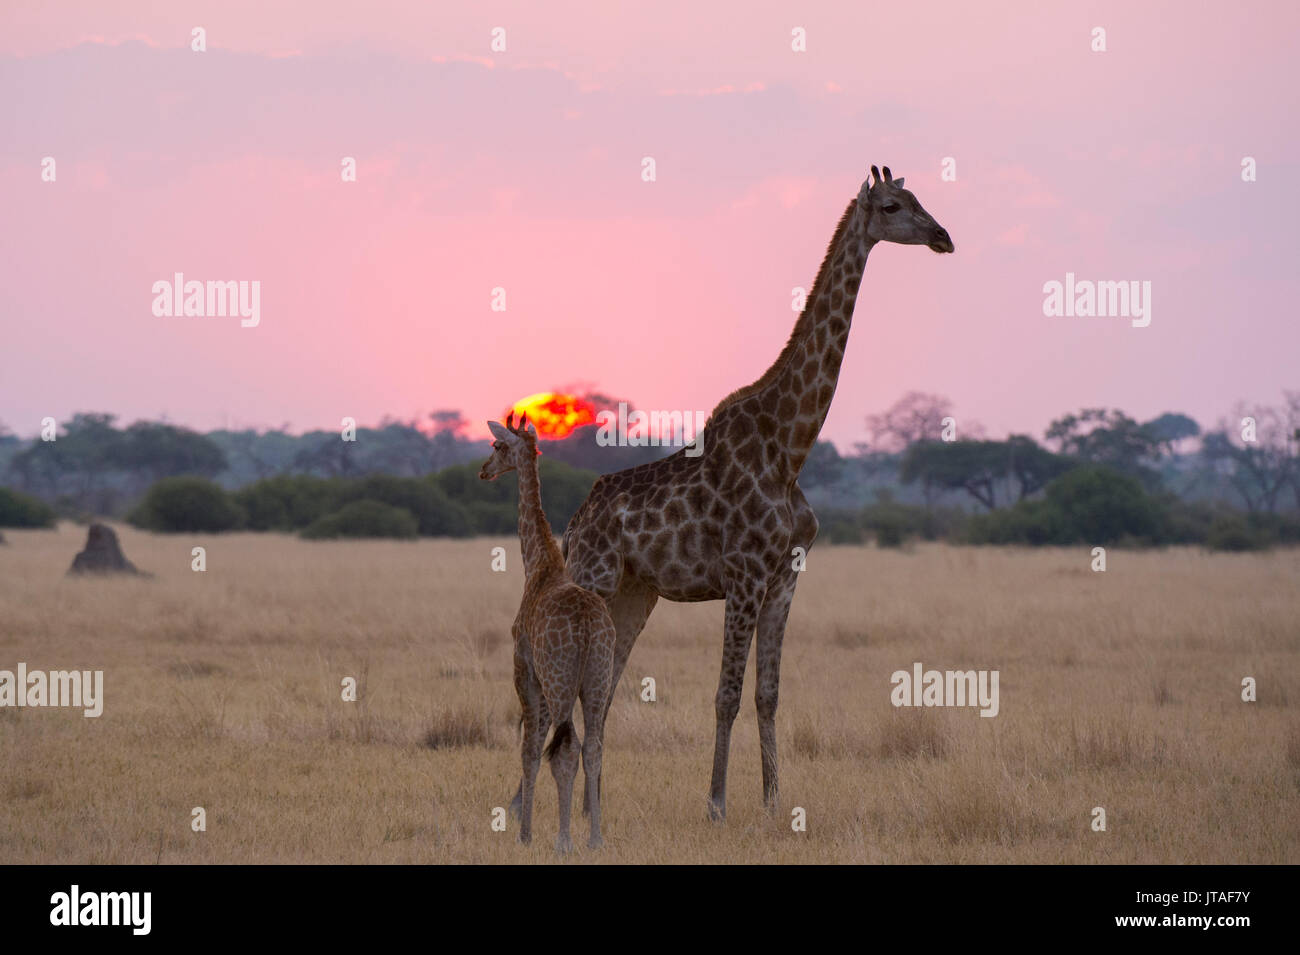 Une girafe avec son bébé (Giraffa camelopardalis) au coucher du soleil, le Botswana, l'Afrique Banque D'Images